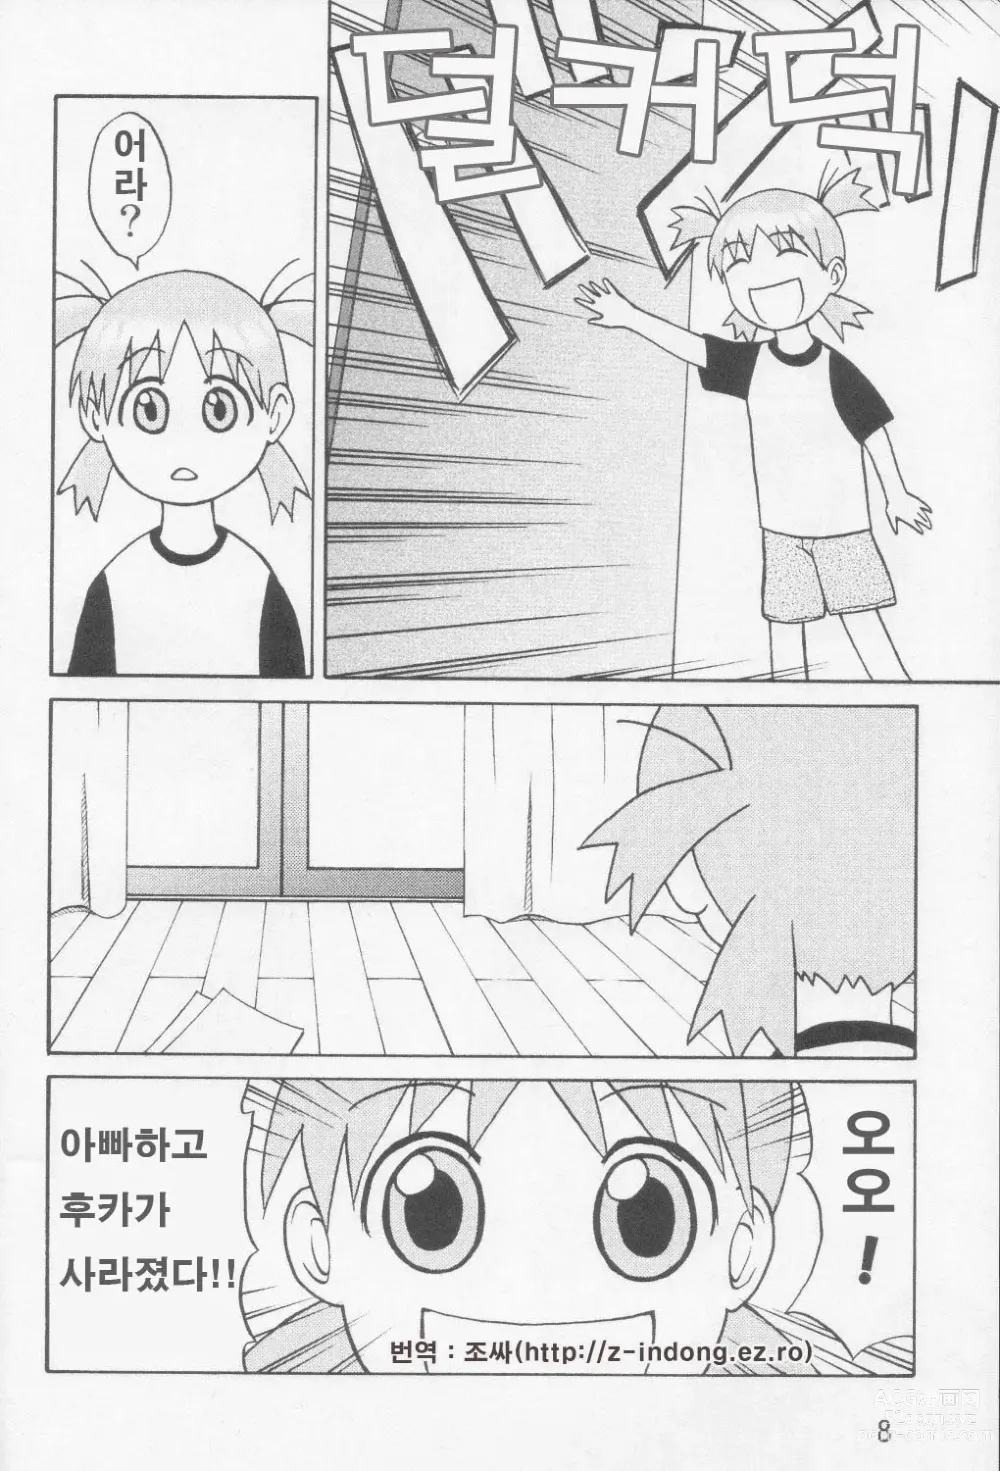 Page 7 of doujinshi Tou-chan xx no tekidatta